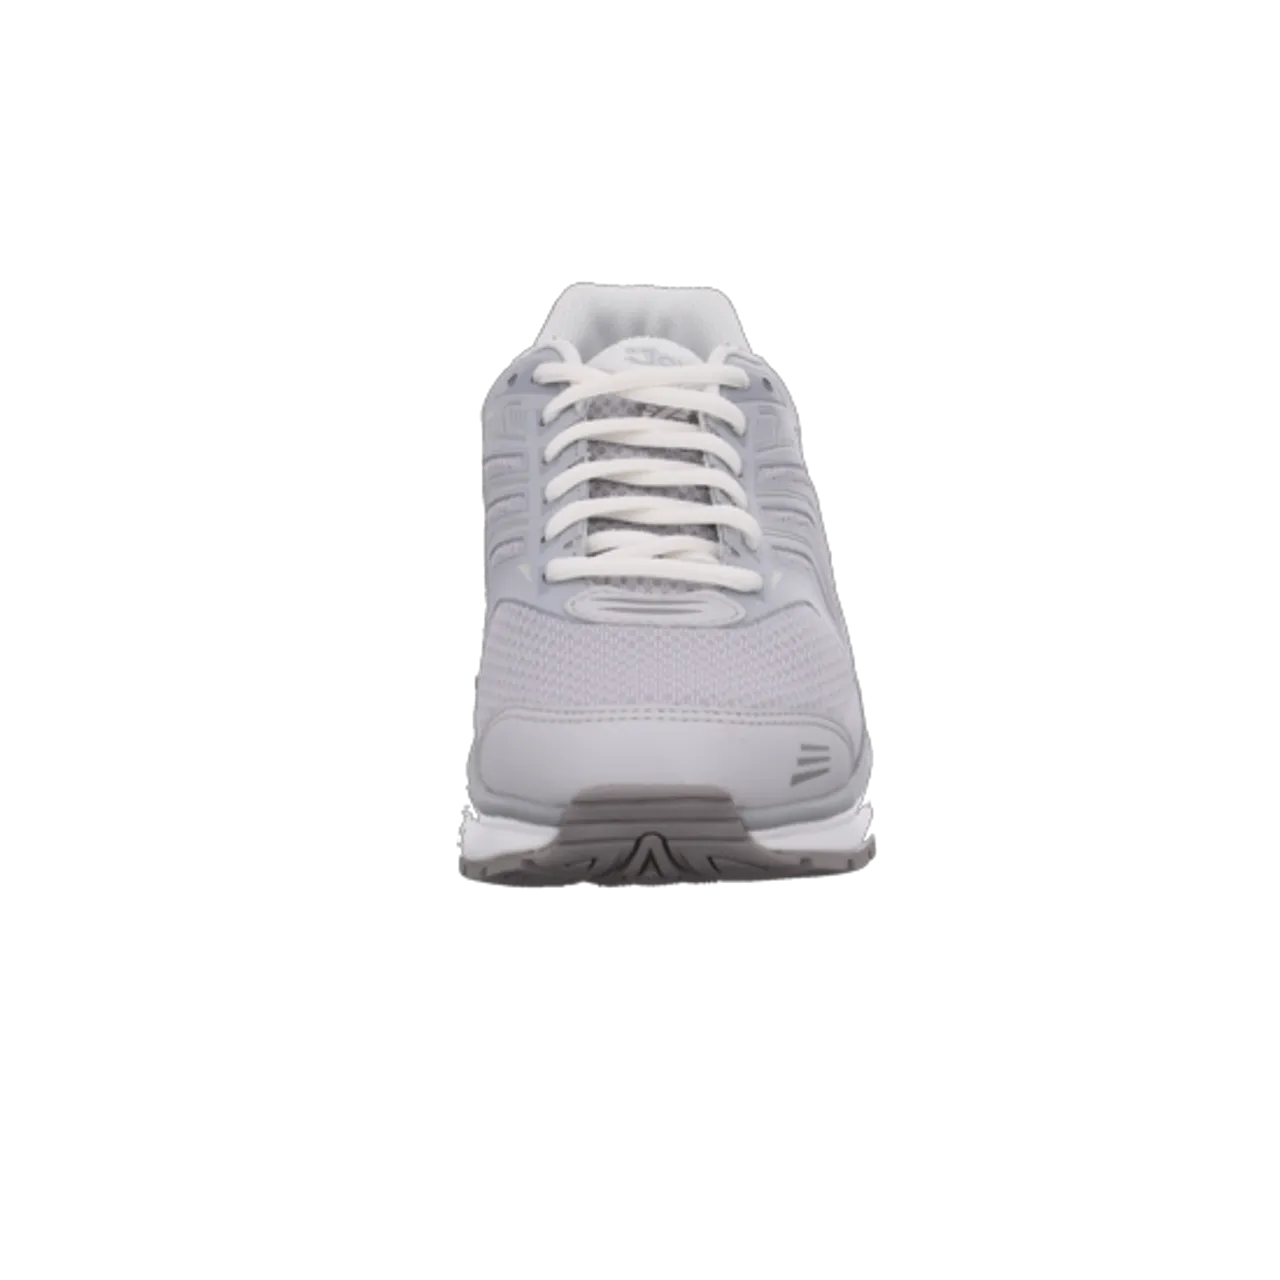 Sneaker grau 863 wrk